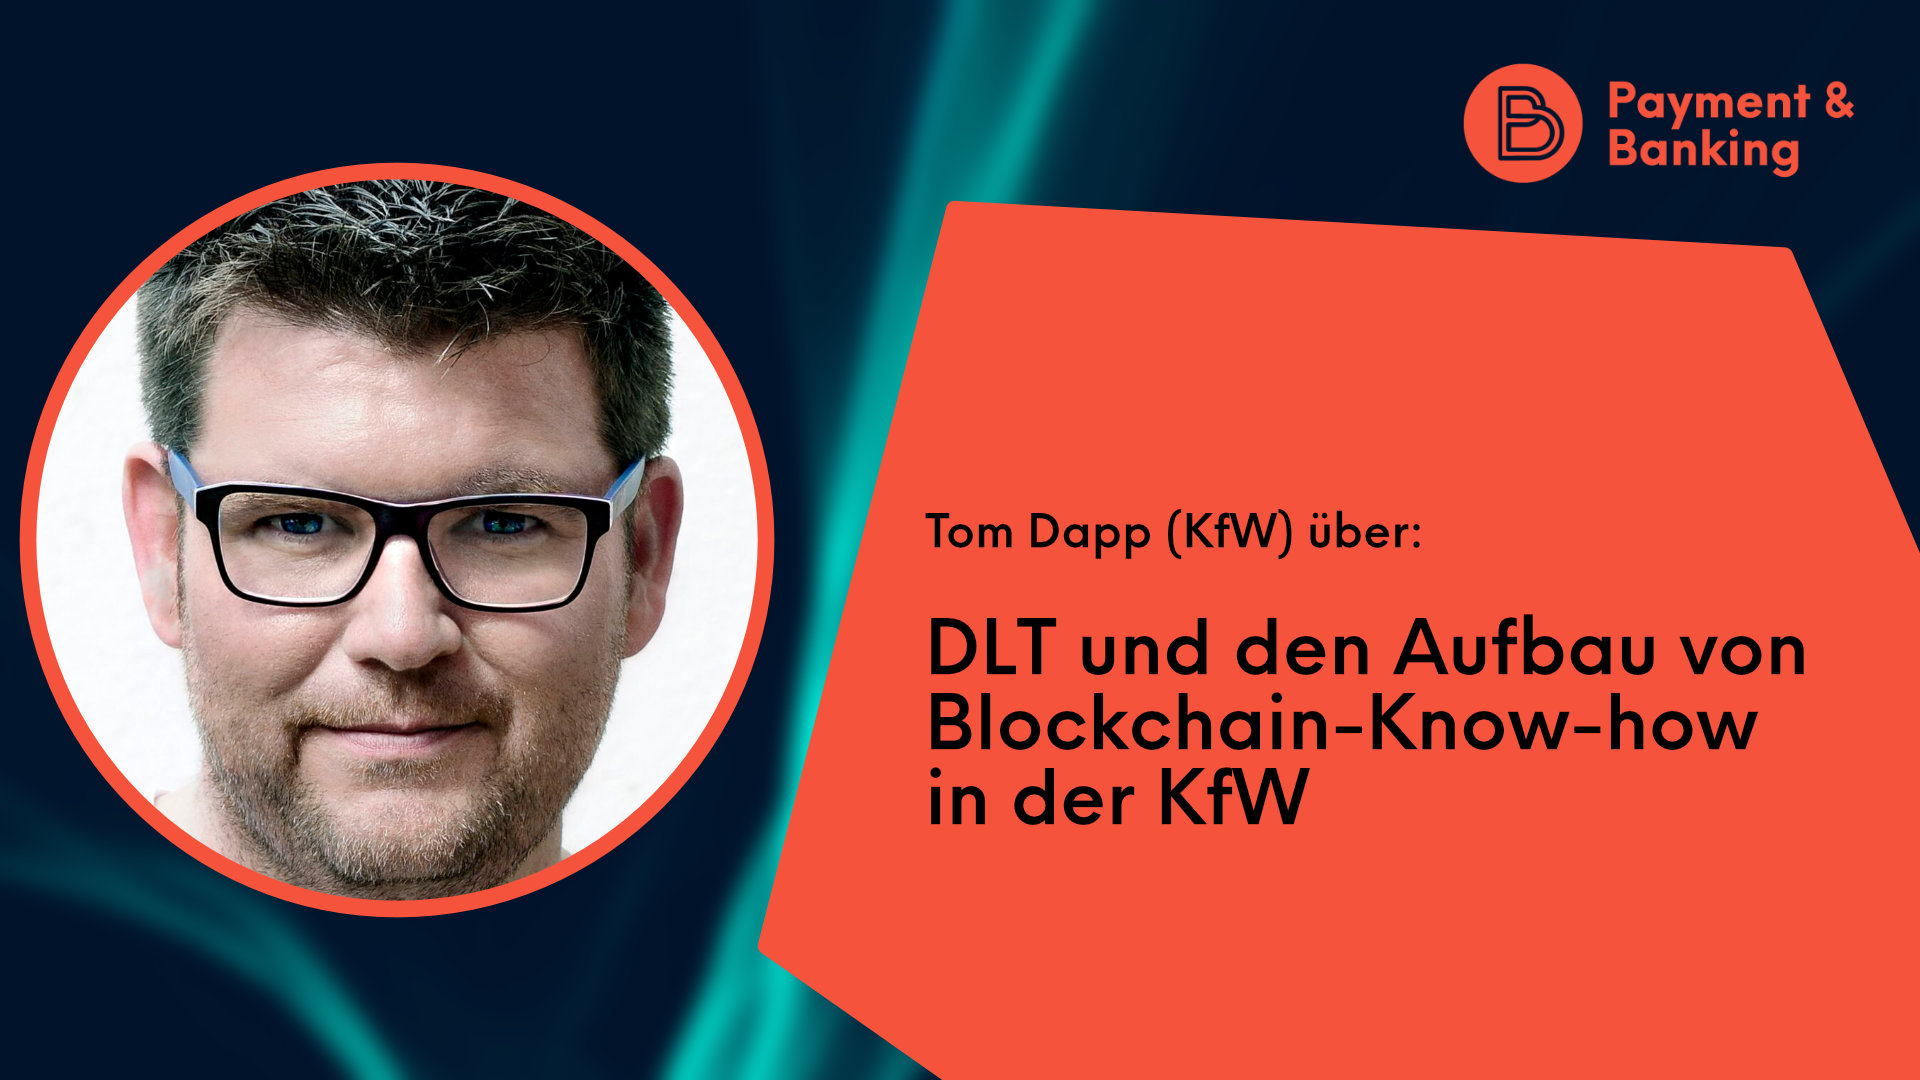 Tom Dapp über DLT & den Aufbau von Blockchain-Know-how in der KfW